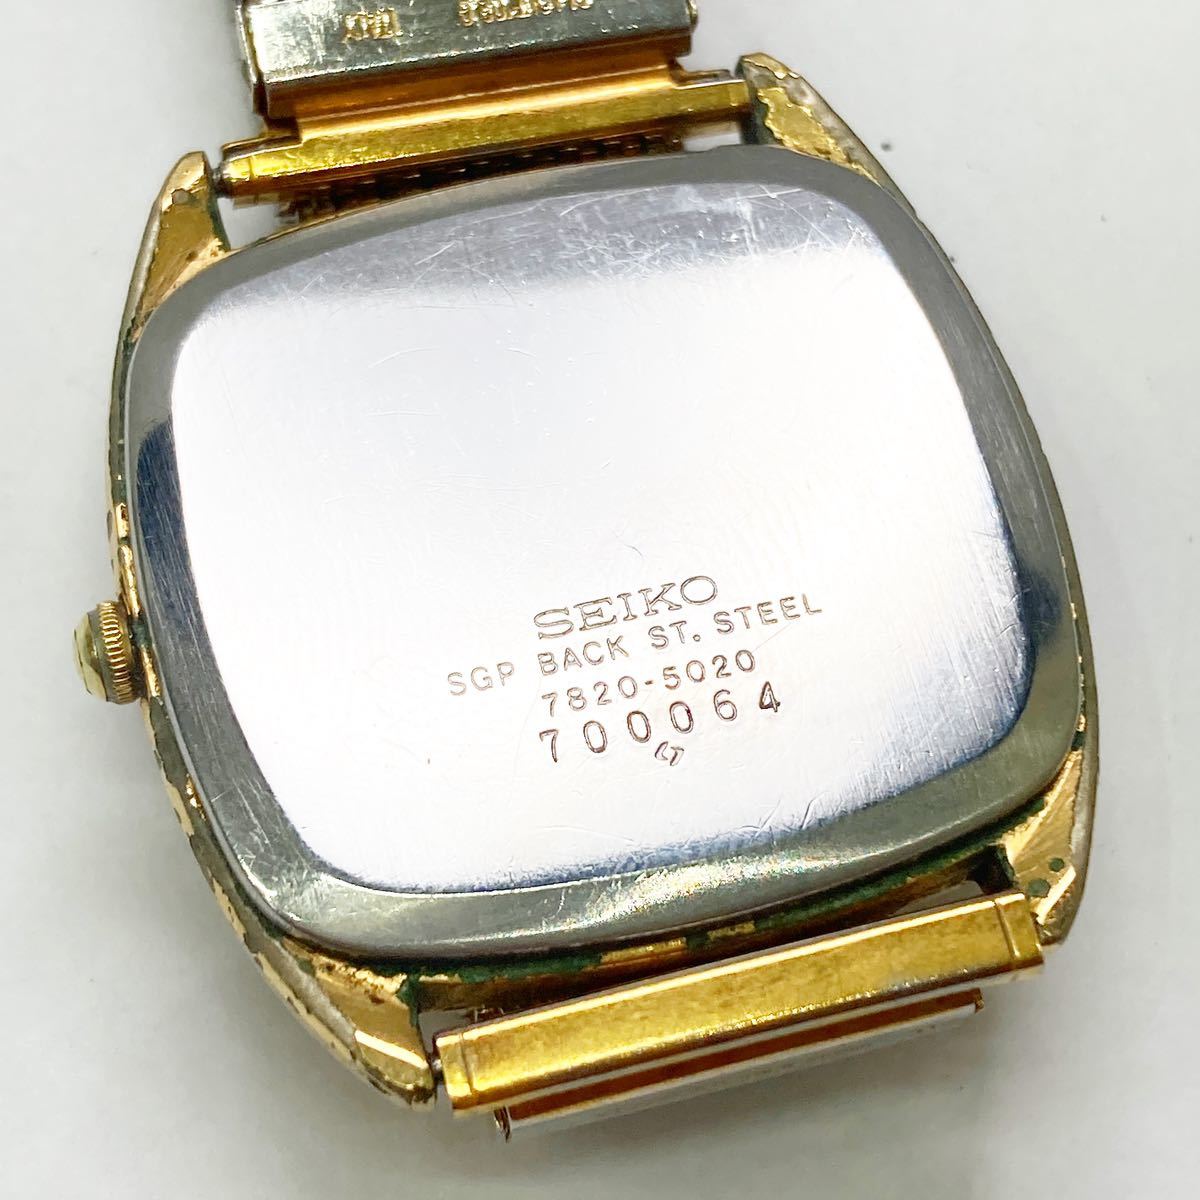 SEIKO セイコー 7820-5020 クォーツ スクエア アナログ 腕時計 ゴールド文字盤 alp色_画像4